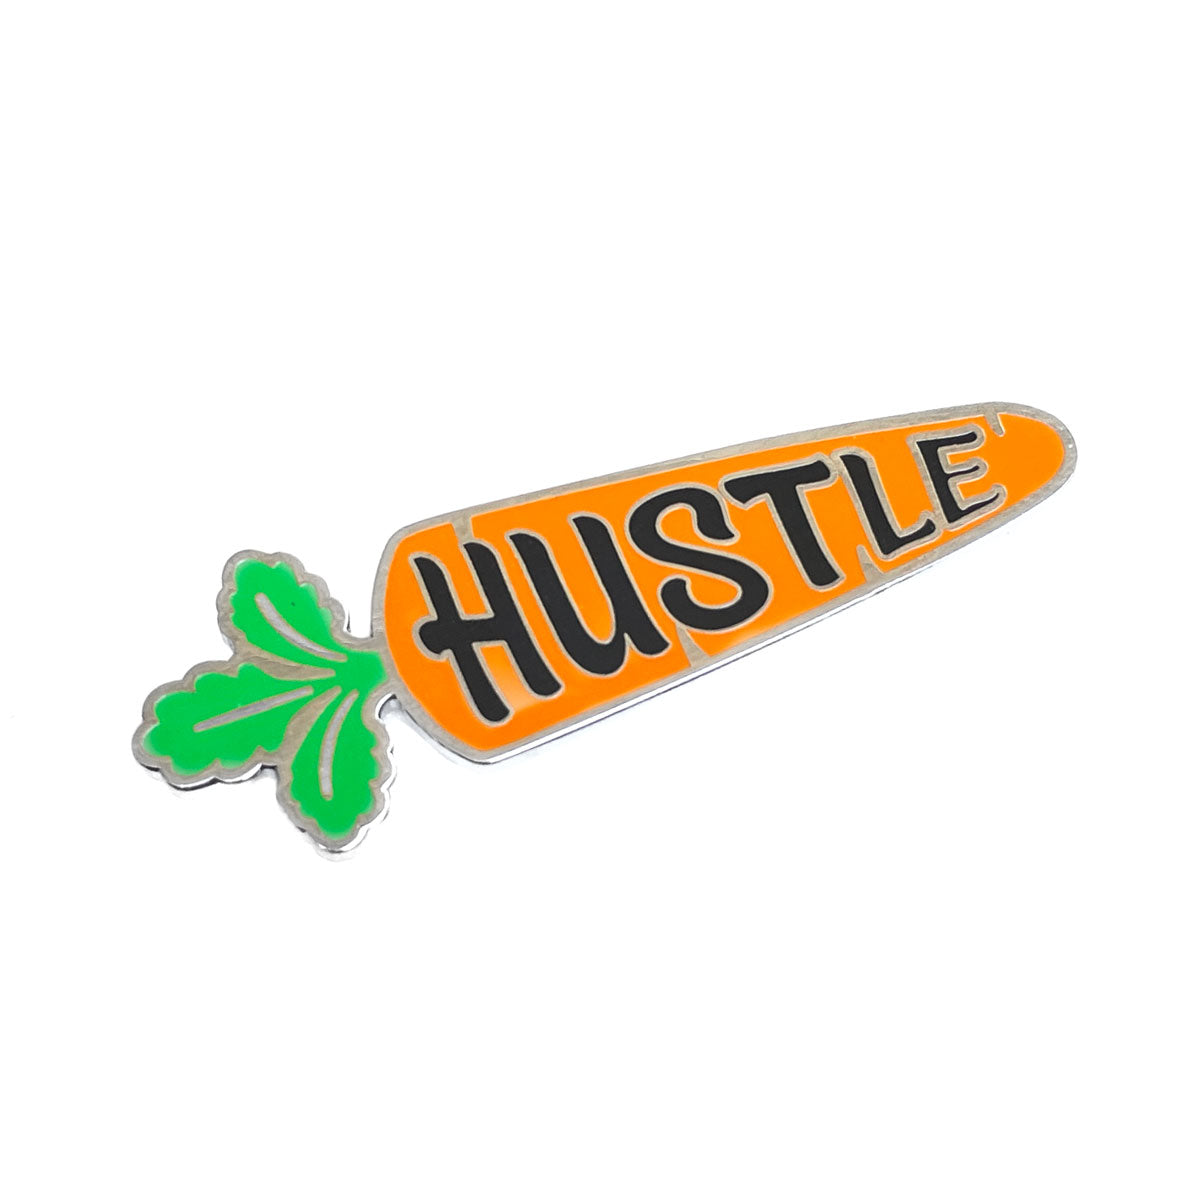 Hustle Pin - Whosits Whatsits